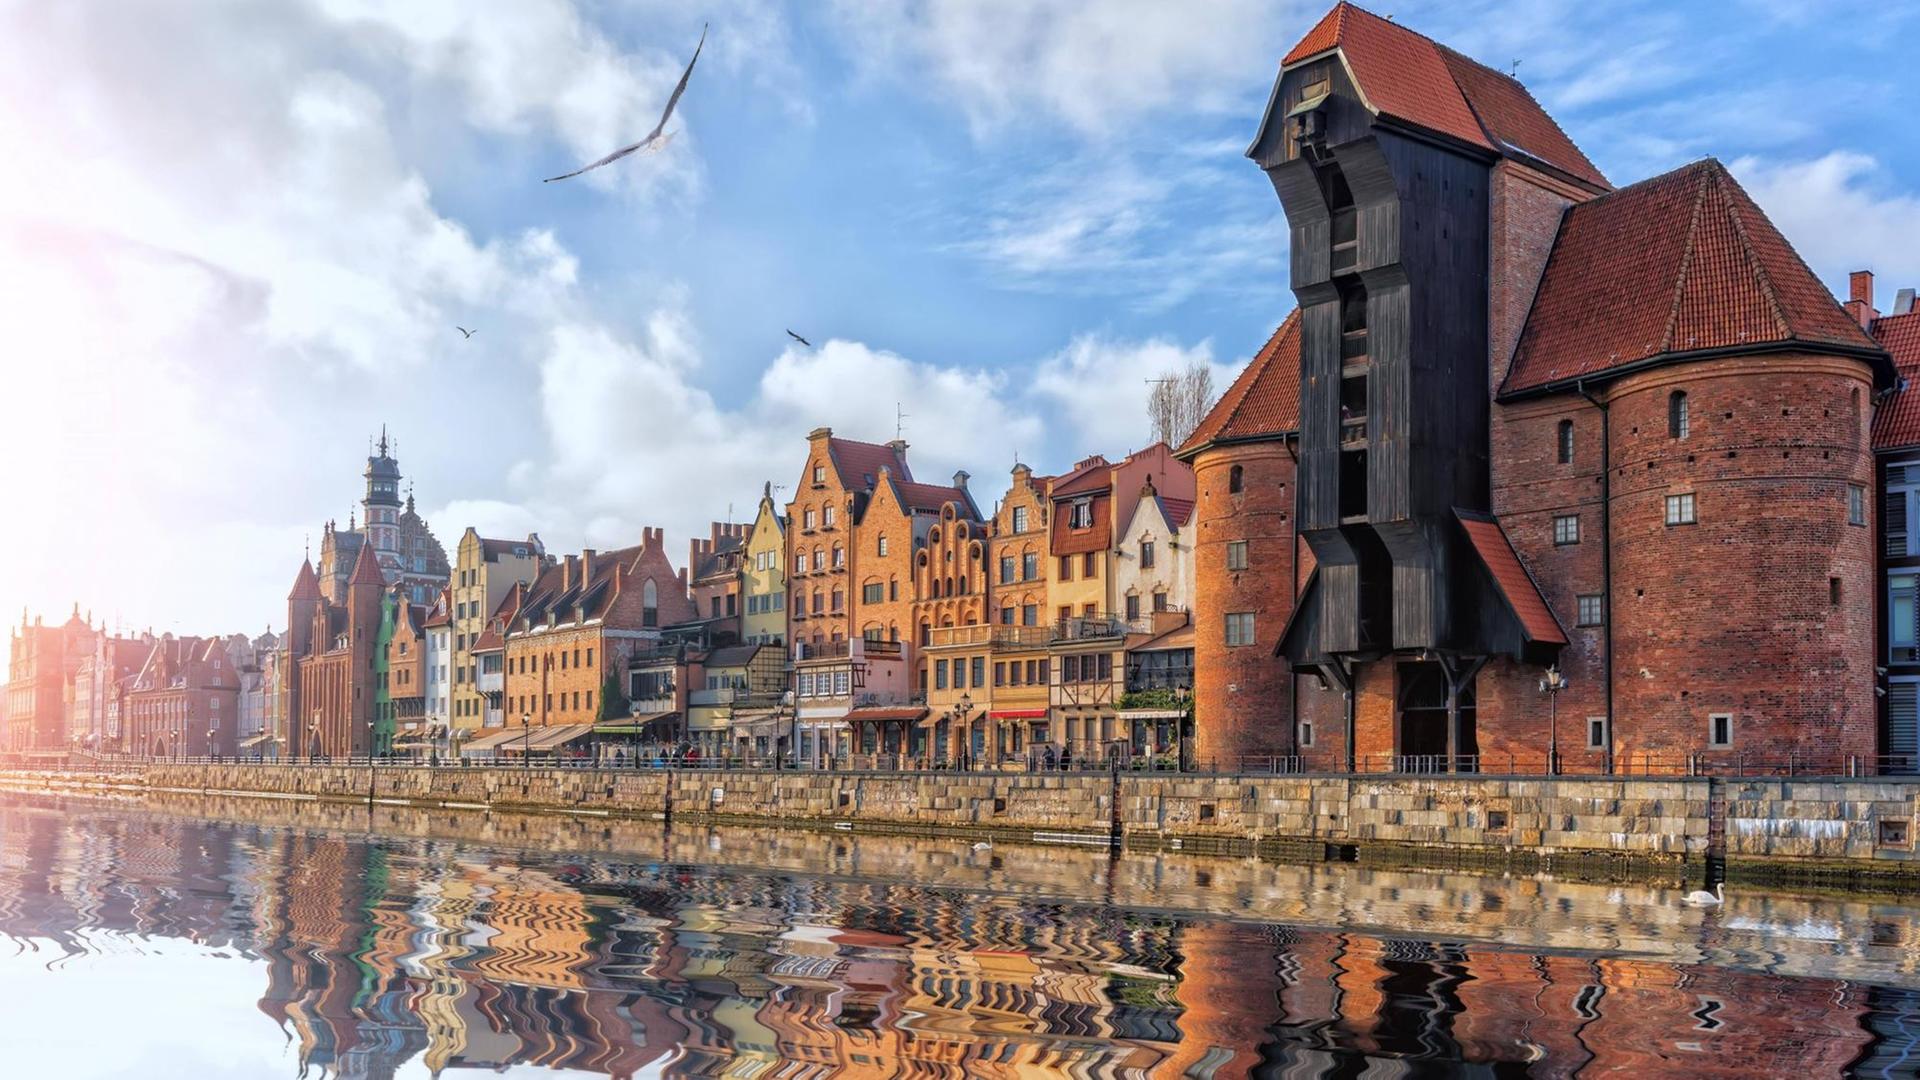 Blick auf das Hafengelände mit historischem Kran und alten Häusern, die sich allesam im Wasser spiegeln.